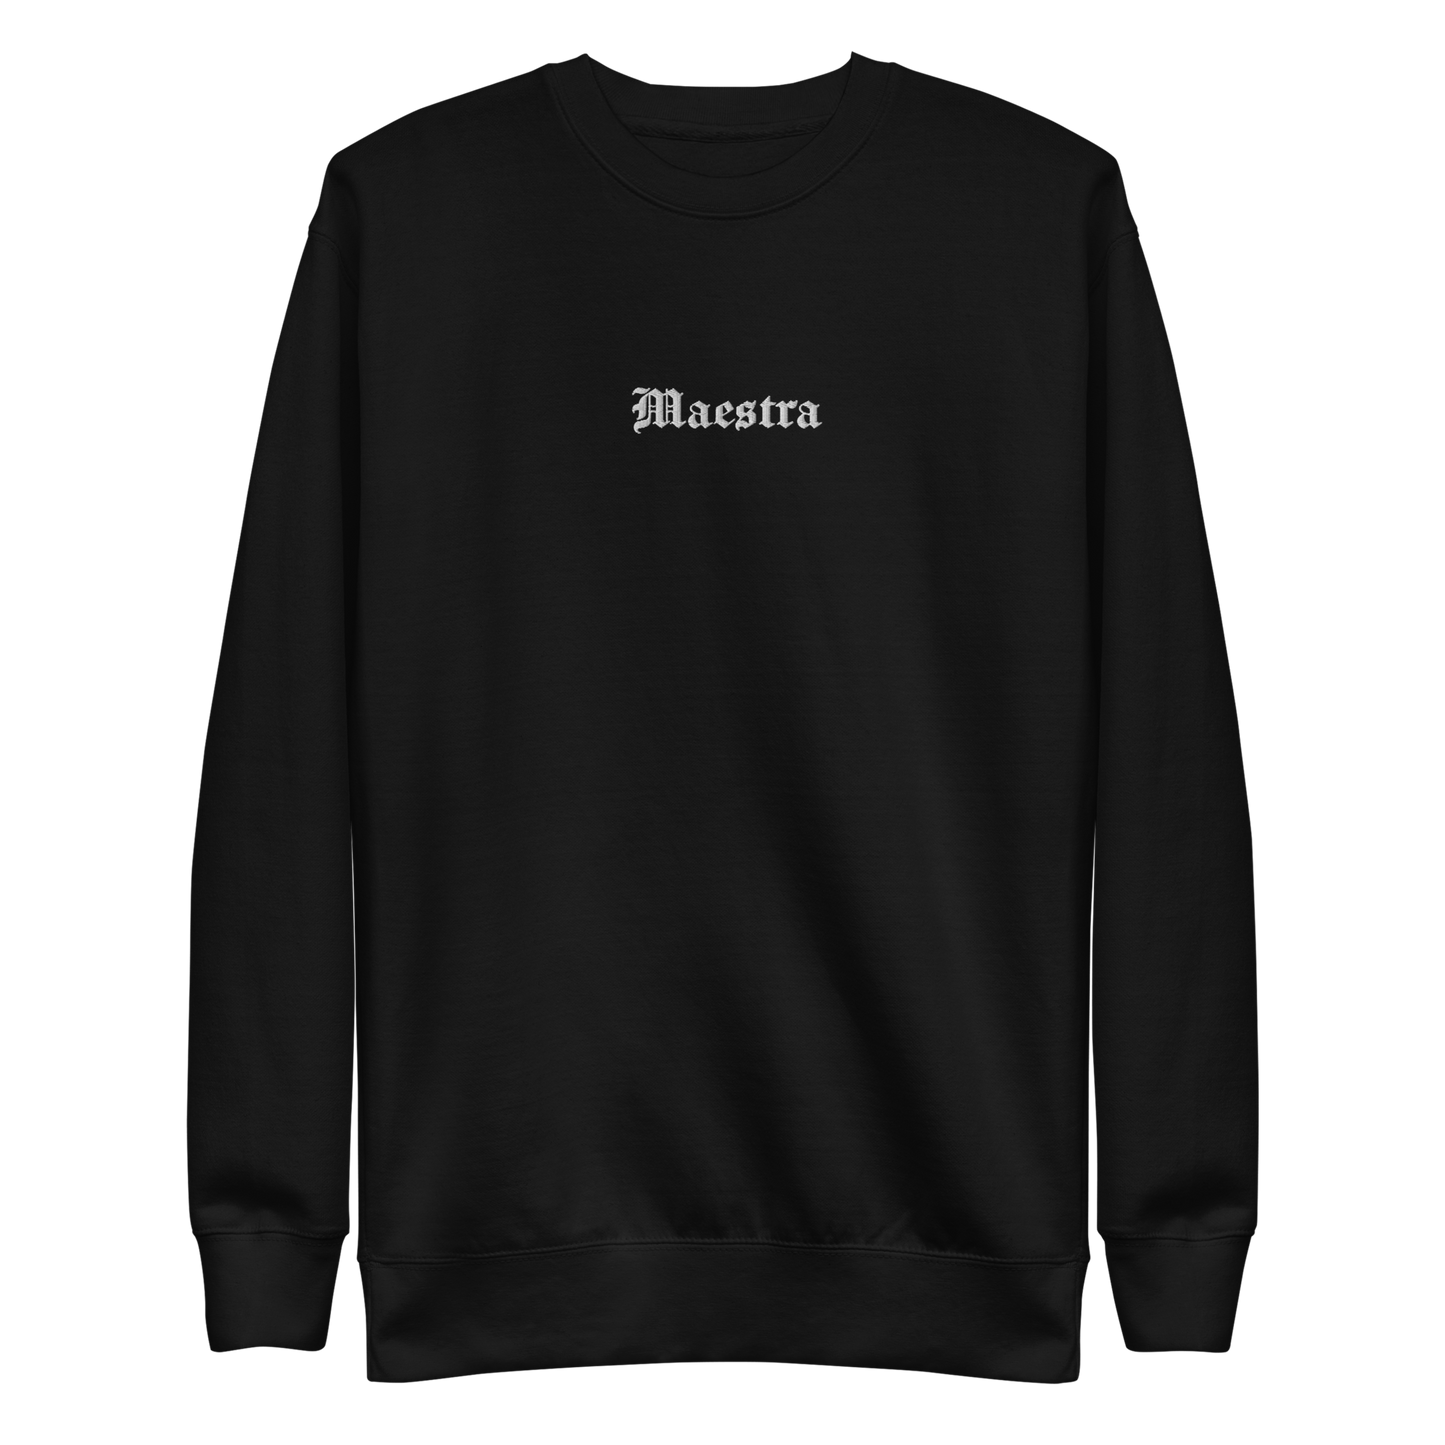 Maestra (Teacher) - Embroidered Premium Sweatshirt